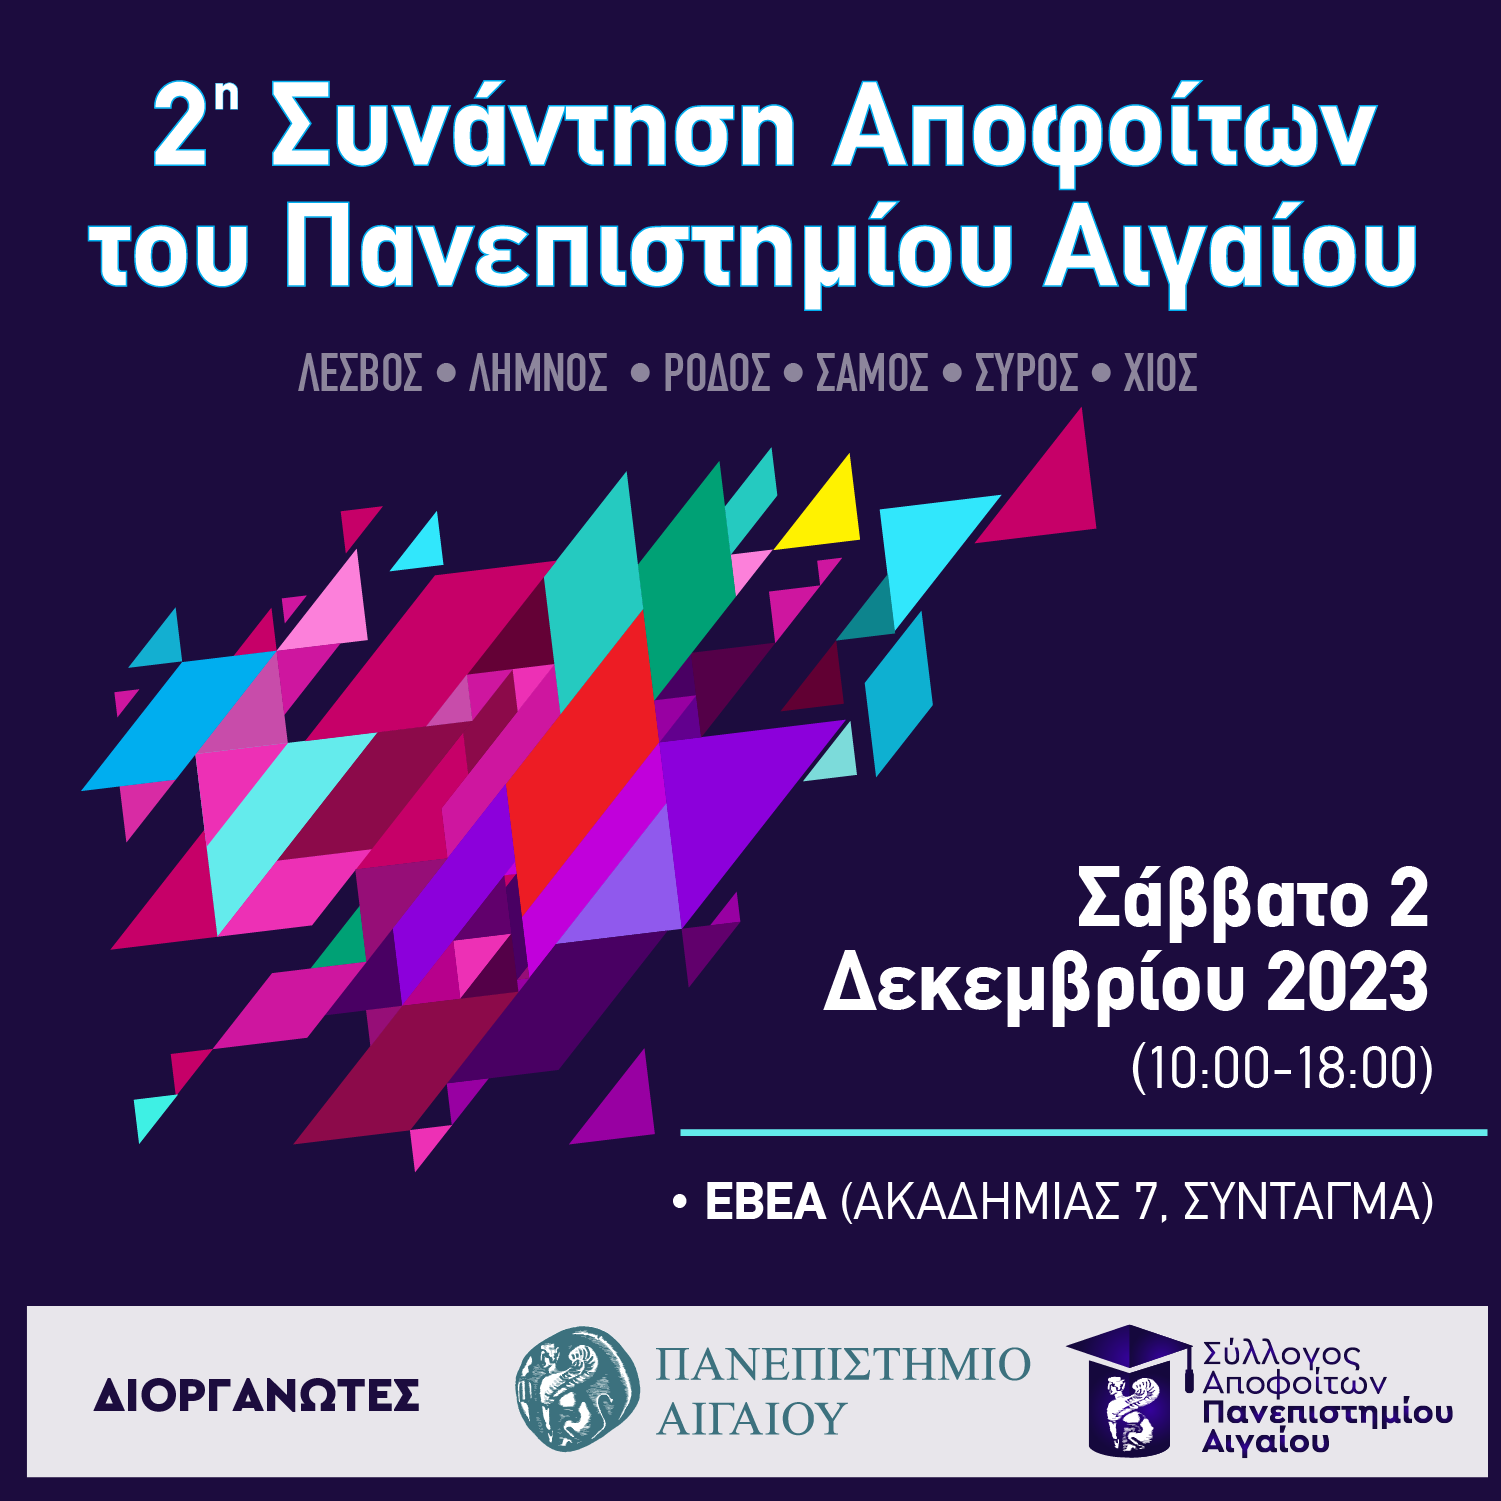 Οι Απόφοιτοι του Πανεπιστημίου Αιγαίου συναντιούνται και πάλι στην Αθήνα